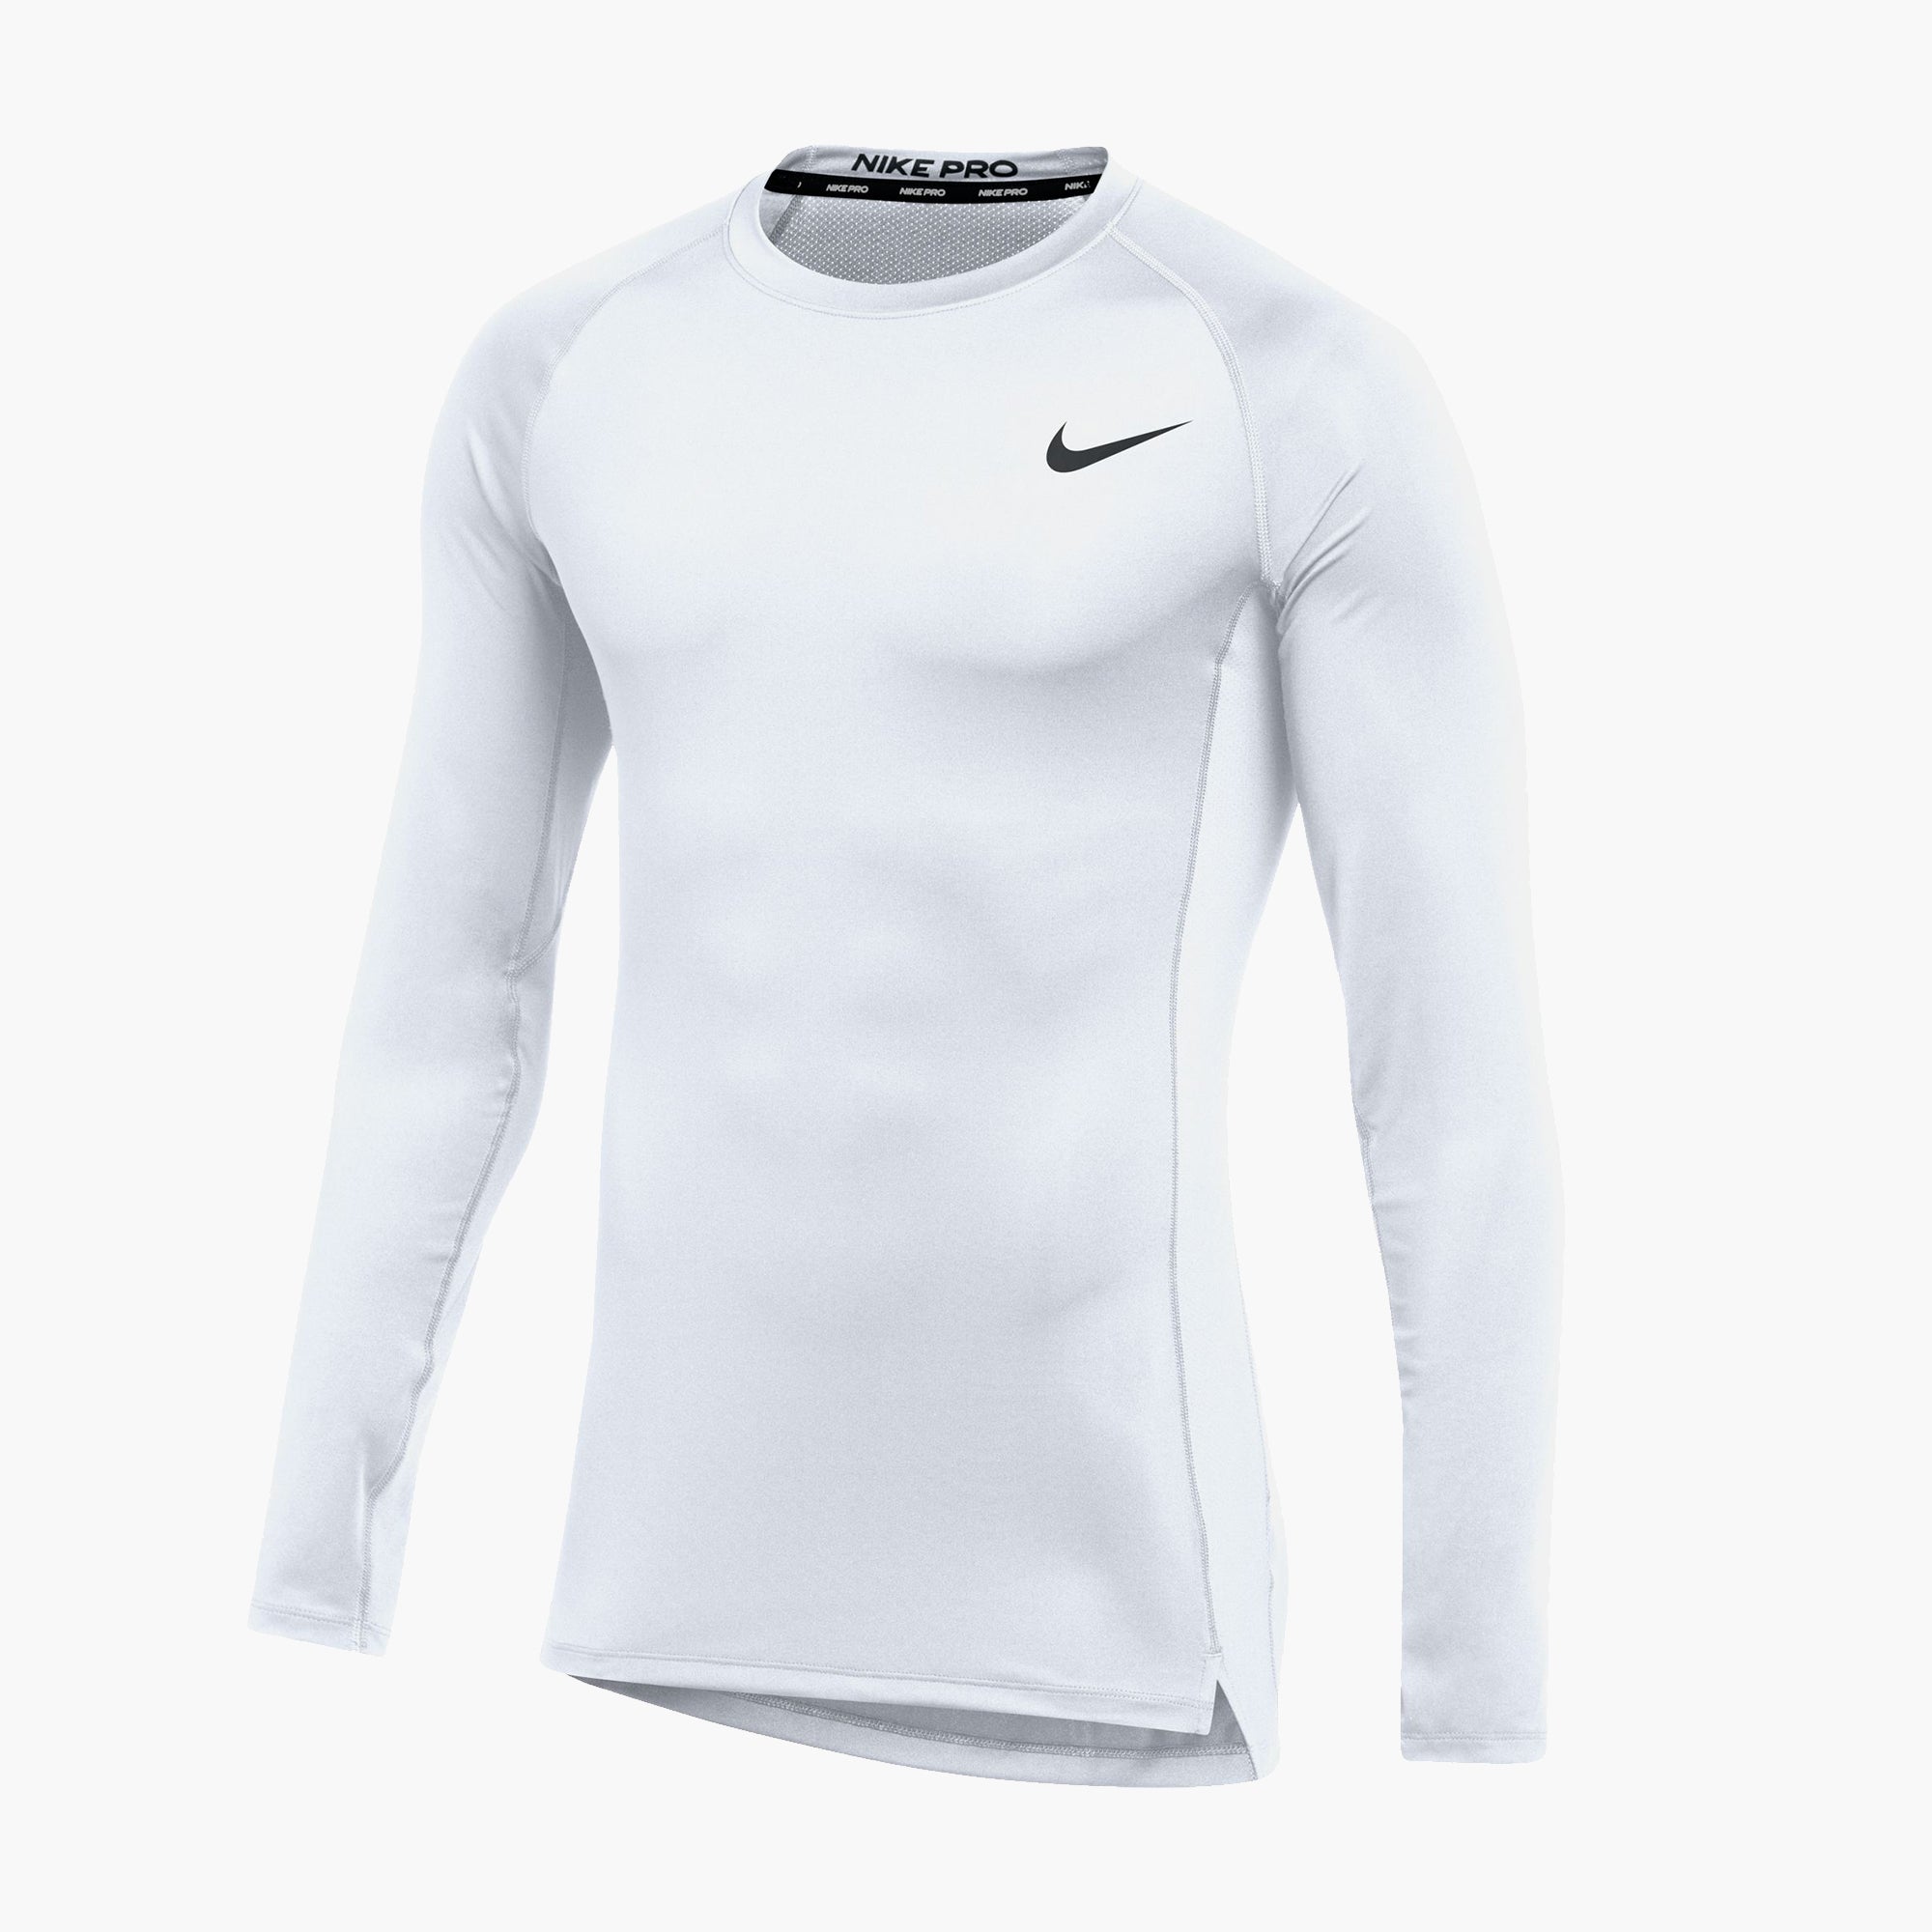 Men's Nike Pro Tight LS Training Top XL / White/Black